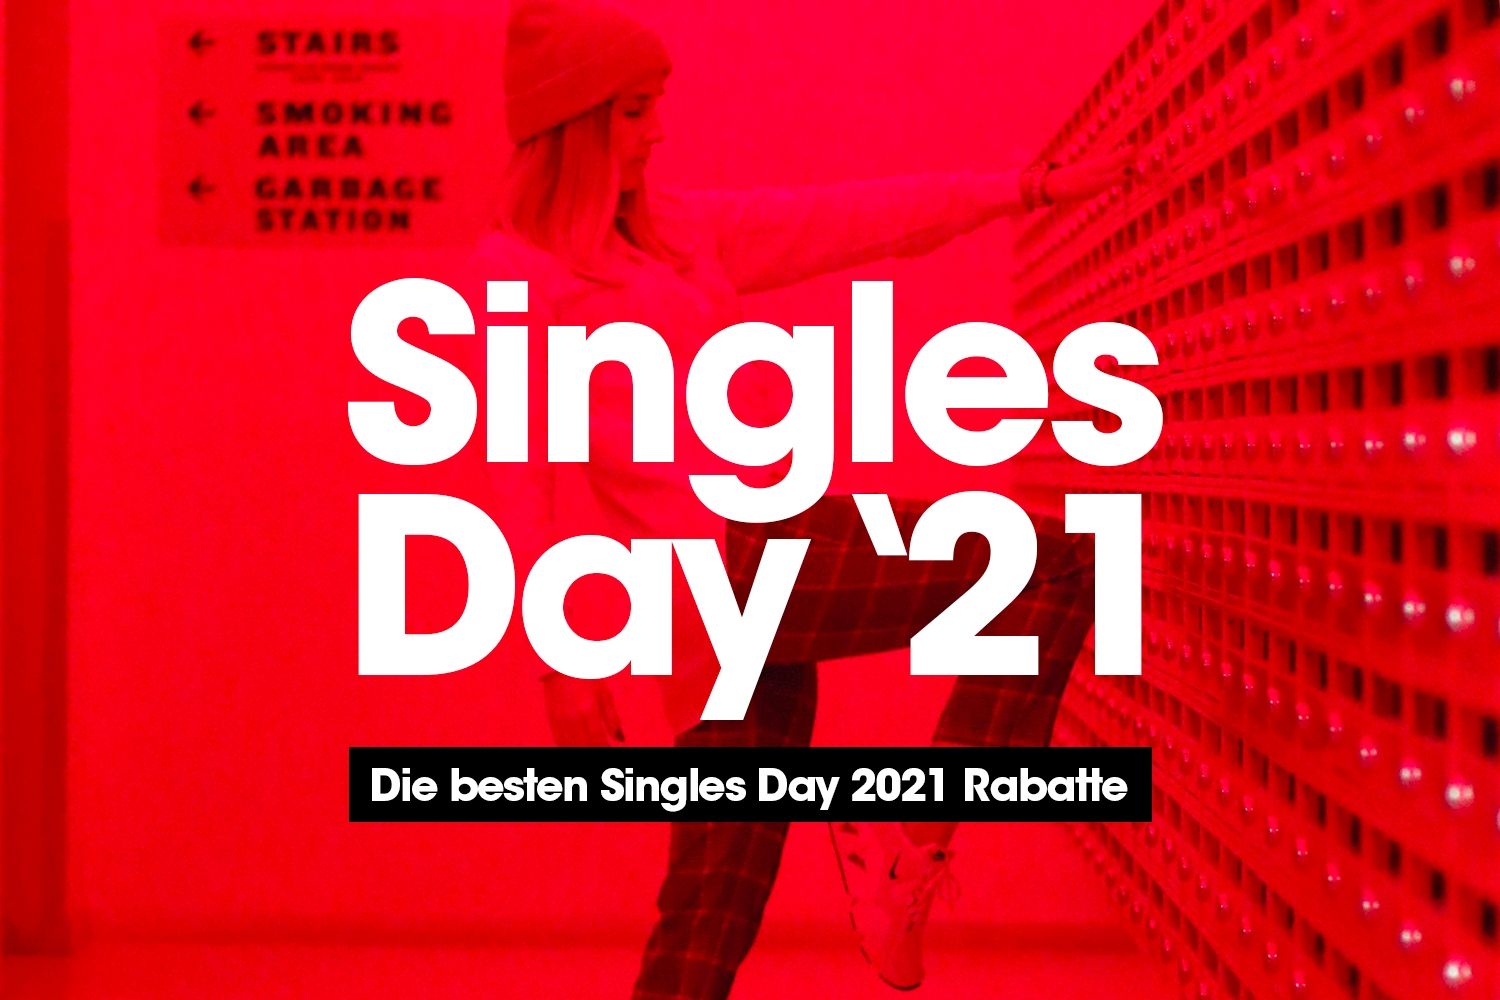 Die besten Singles Day 2021 Rabatte im Überblick